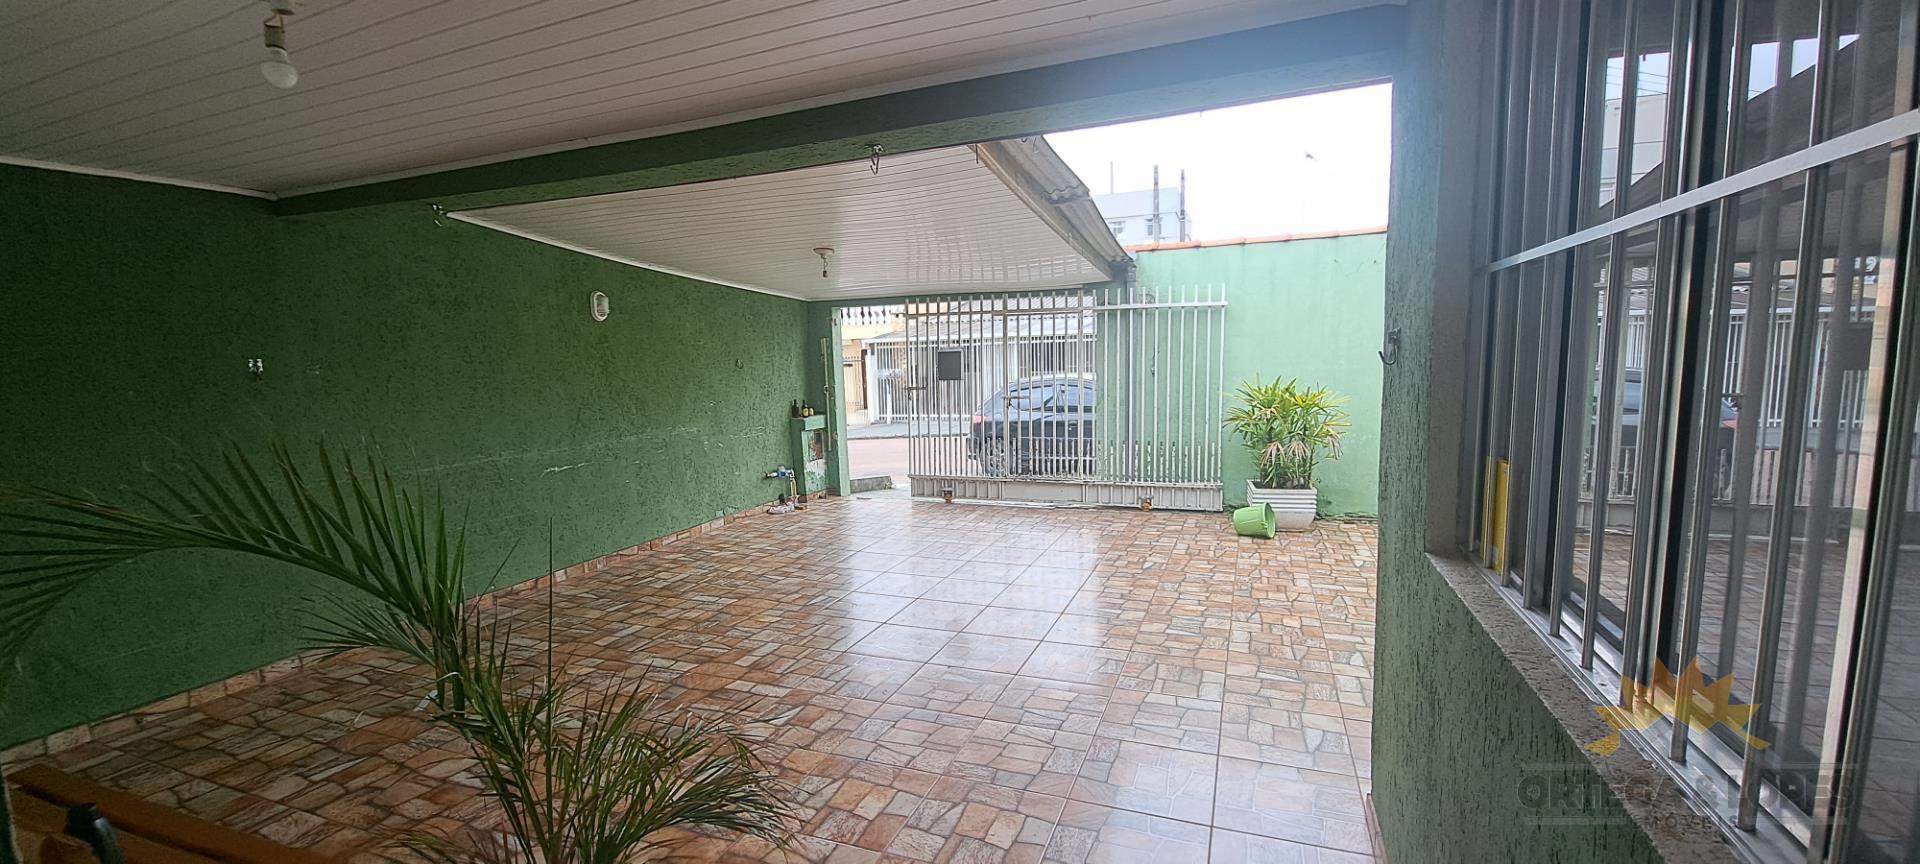 Casa Residencial para venda no bairro Sitio Cercado em Curitiba/PR com 130m² por R$ 350.000,00